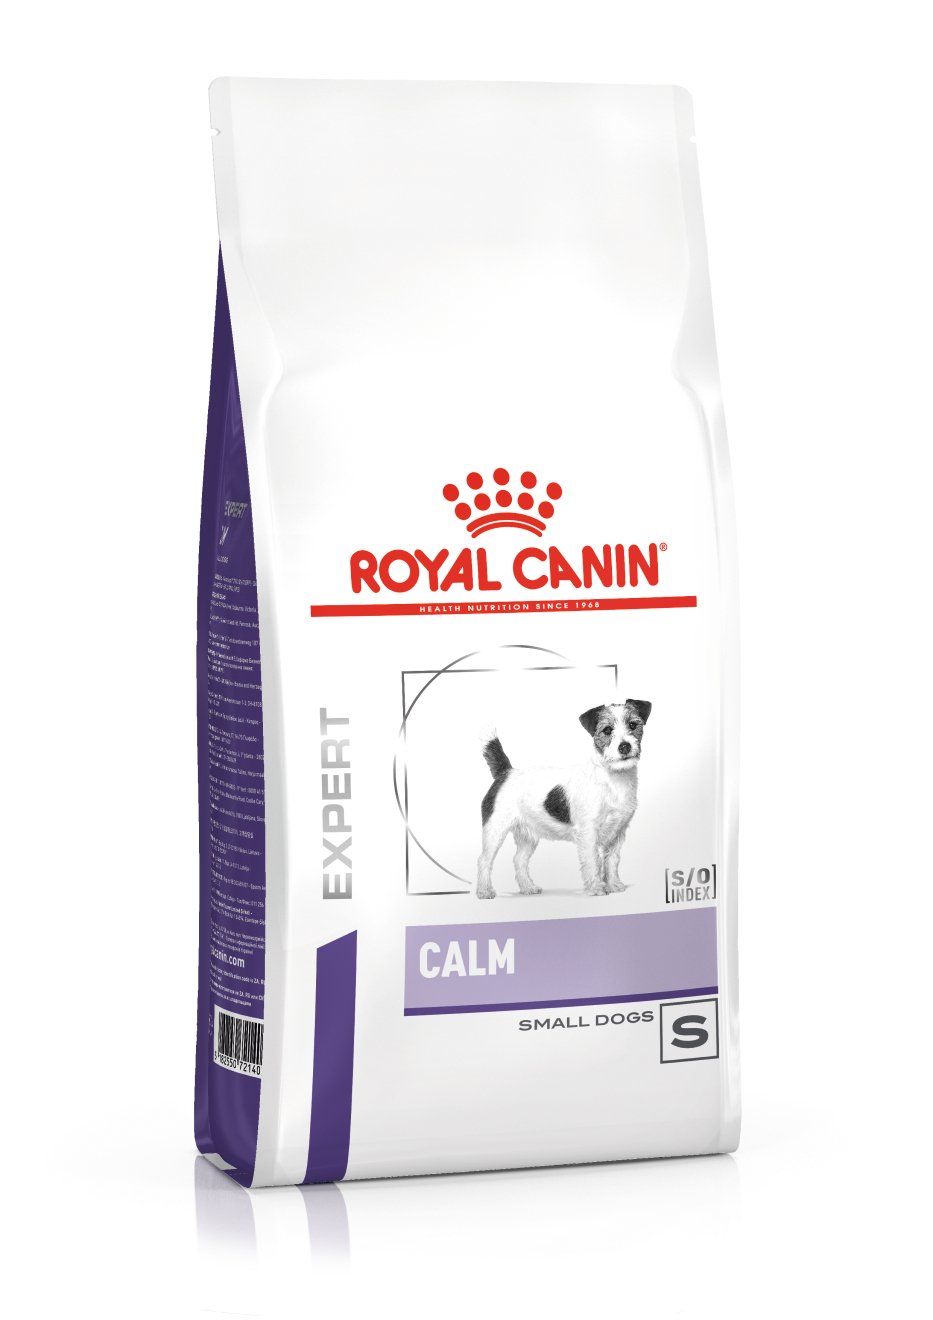 ROYAL CANIN Expert Calm para perros de tamaño pequeño